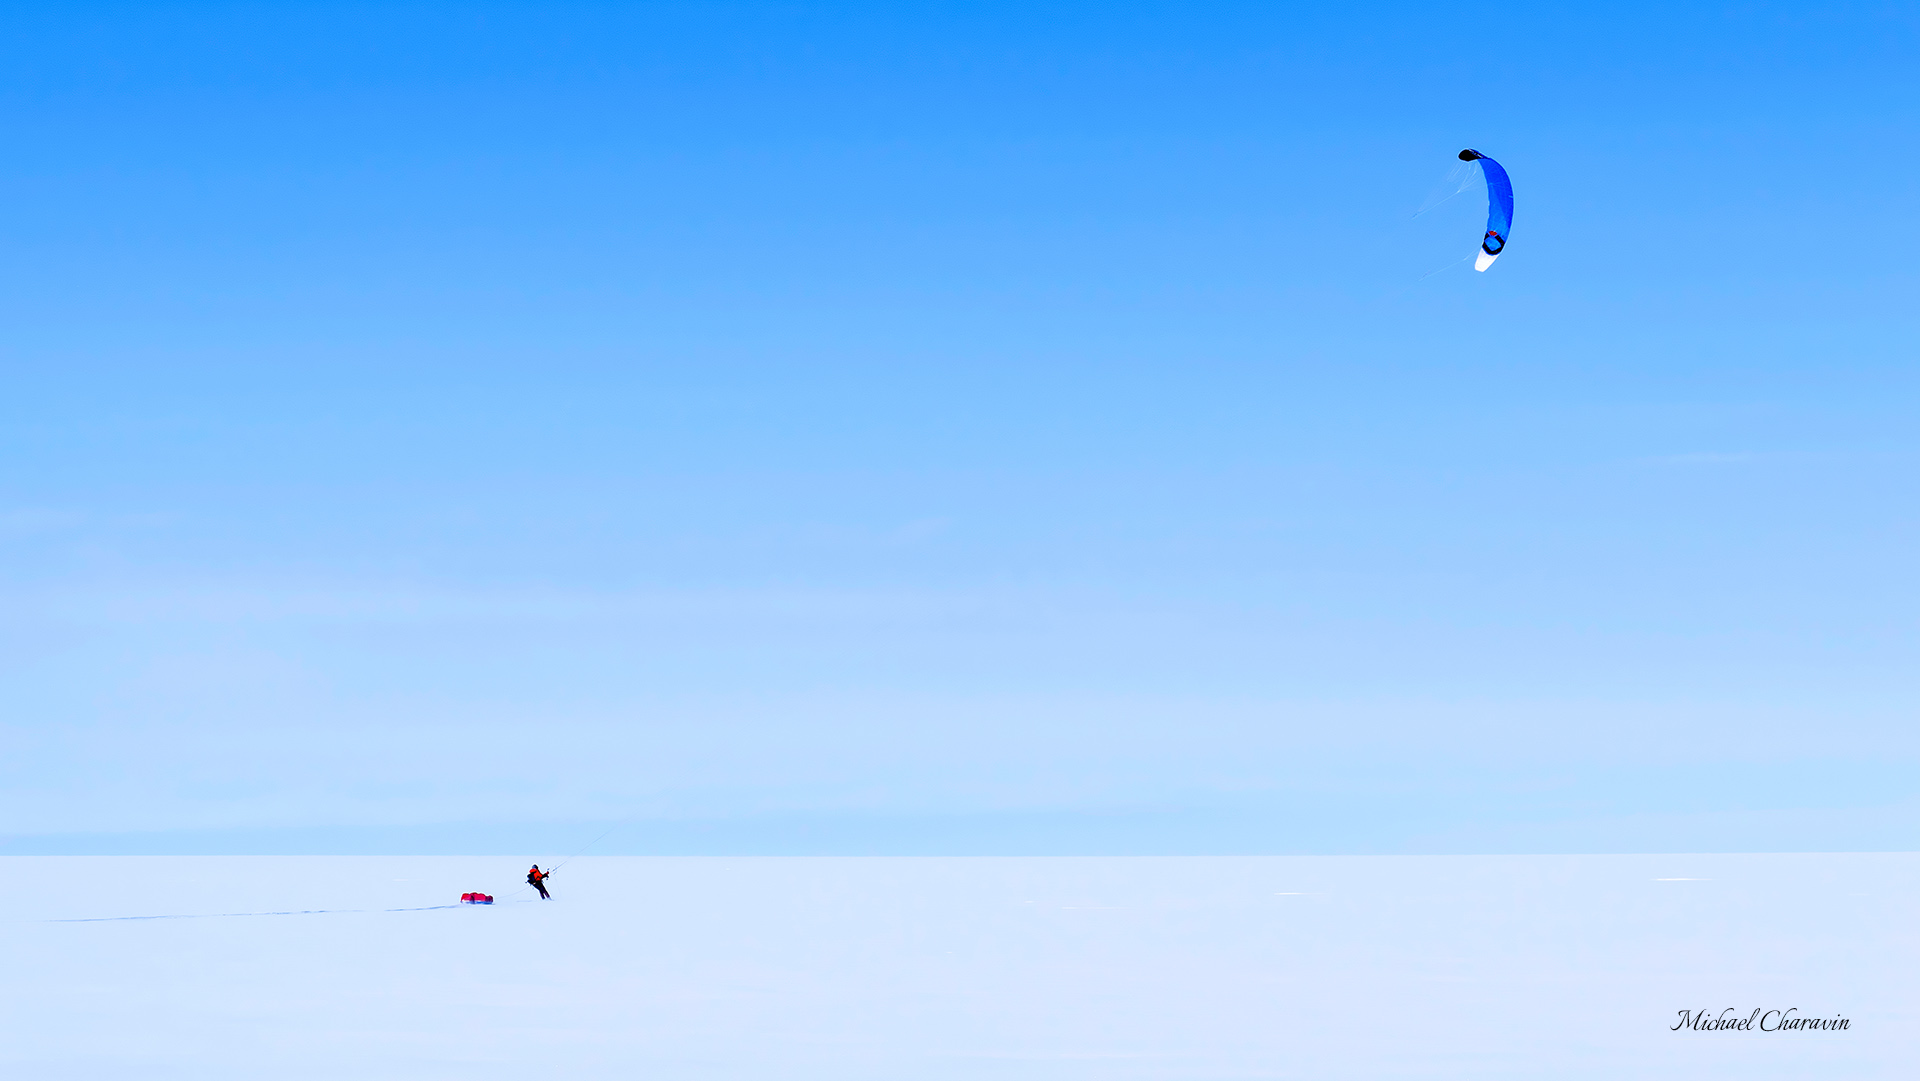 Traversée sud nord du Groenland en ski kite